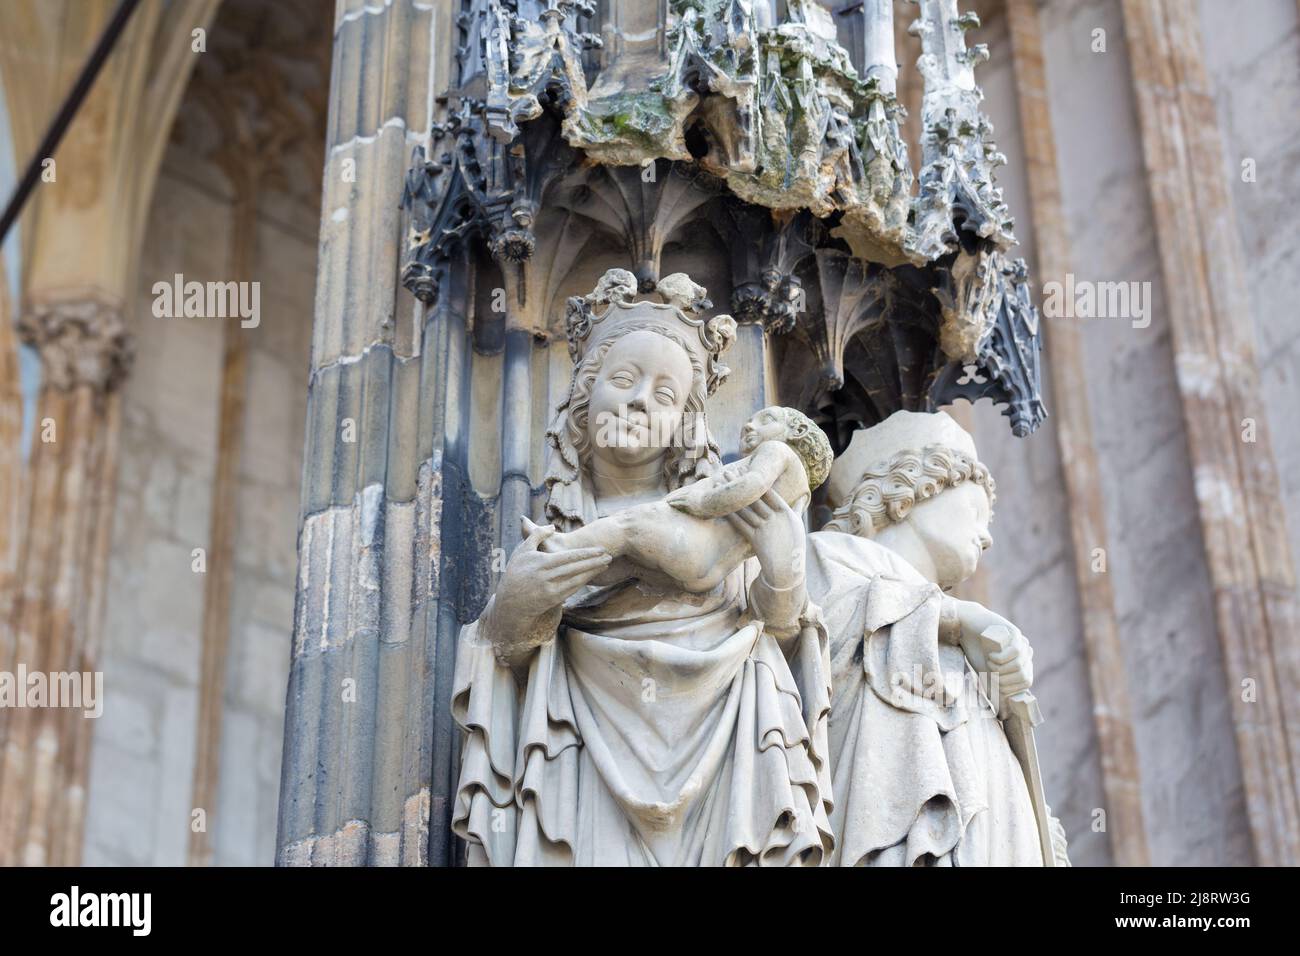 Ulm, Germania - 8 agosto 2021: Primo piano di una statua di Maria con Gesù neonato presso il portale principale della Cattedrale di Ulm. Foto Stock